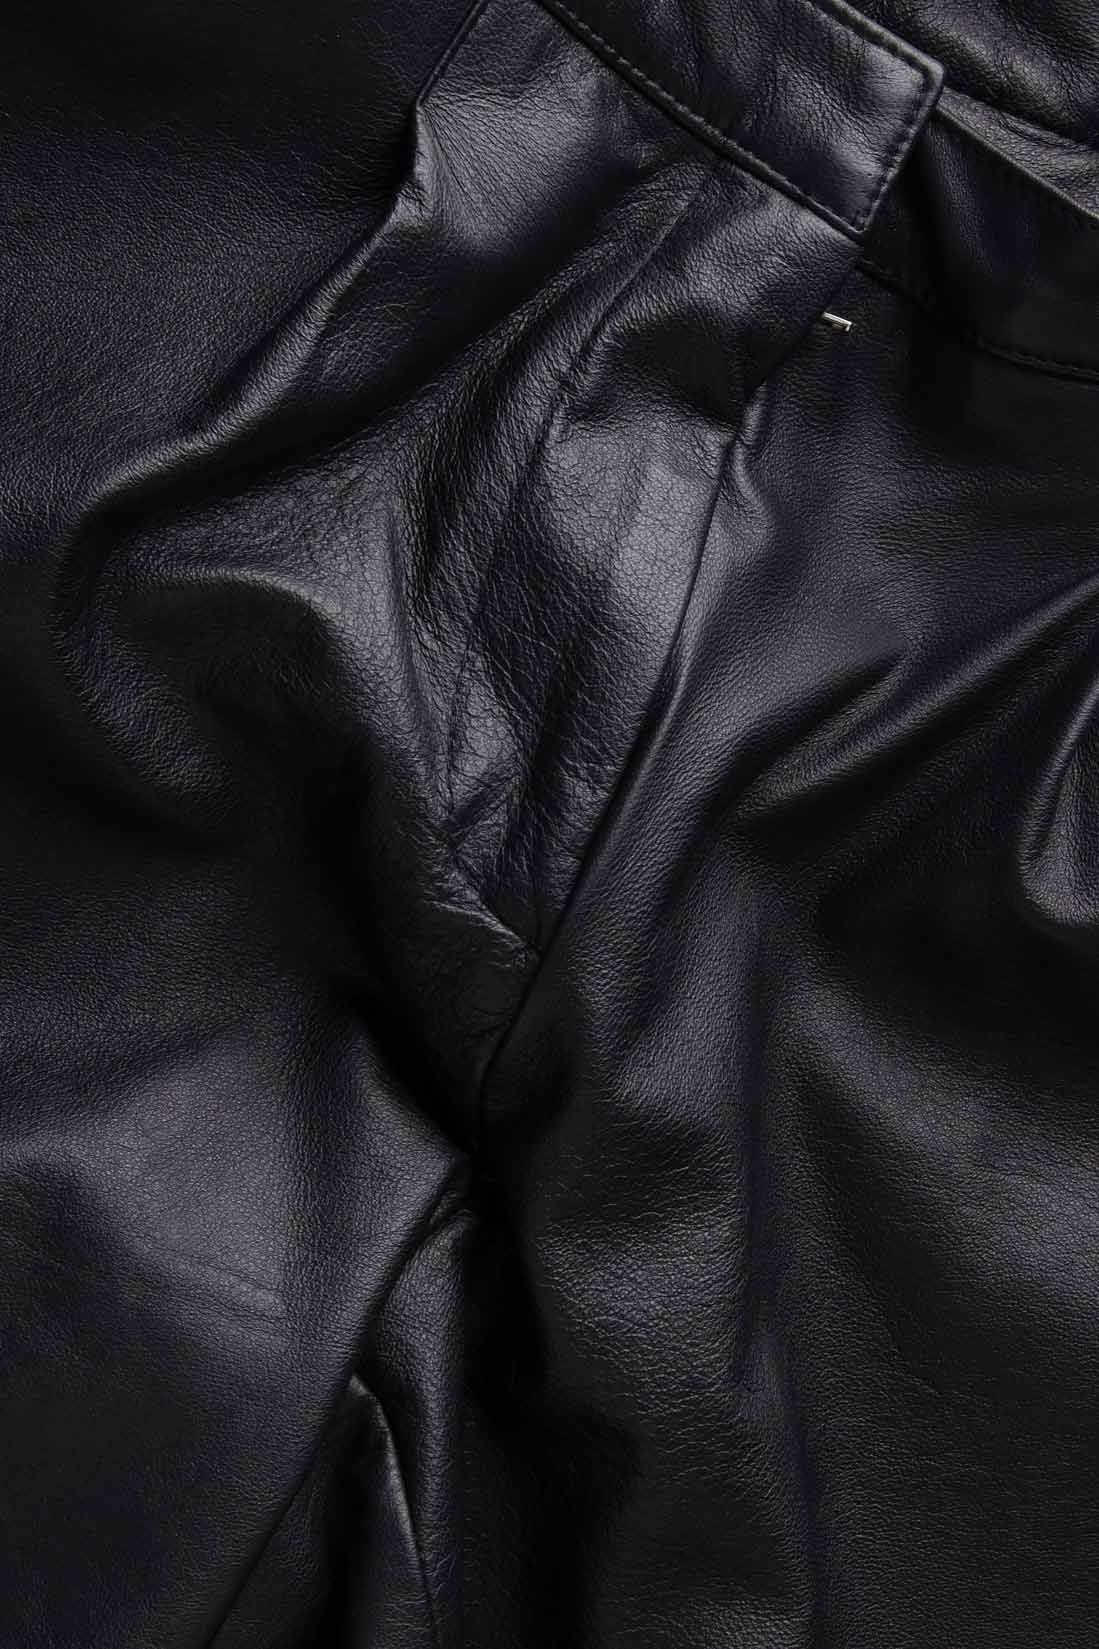 Leather shorts Framboise image 4